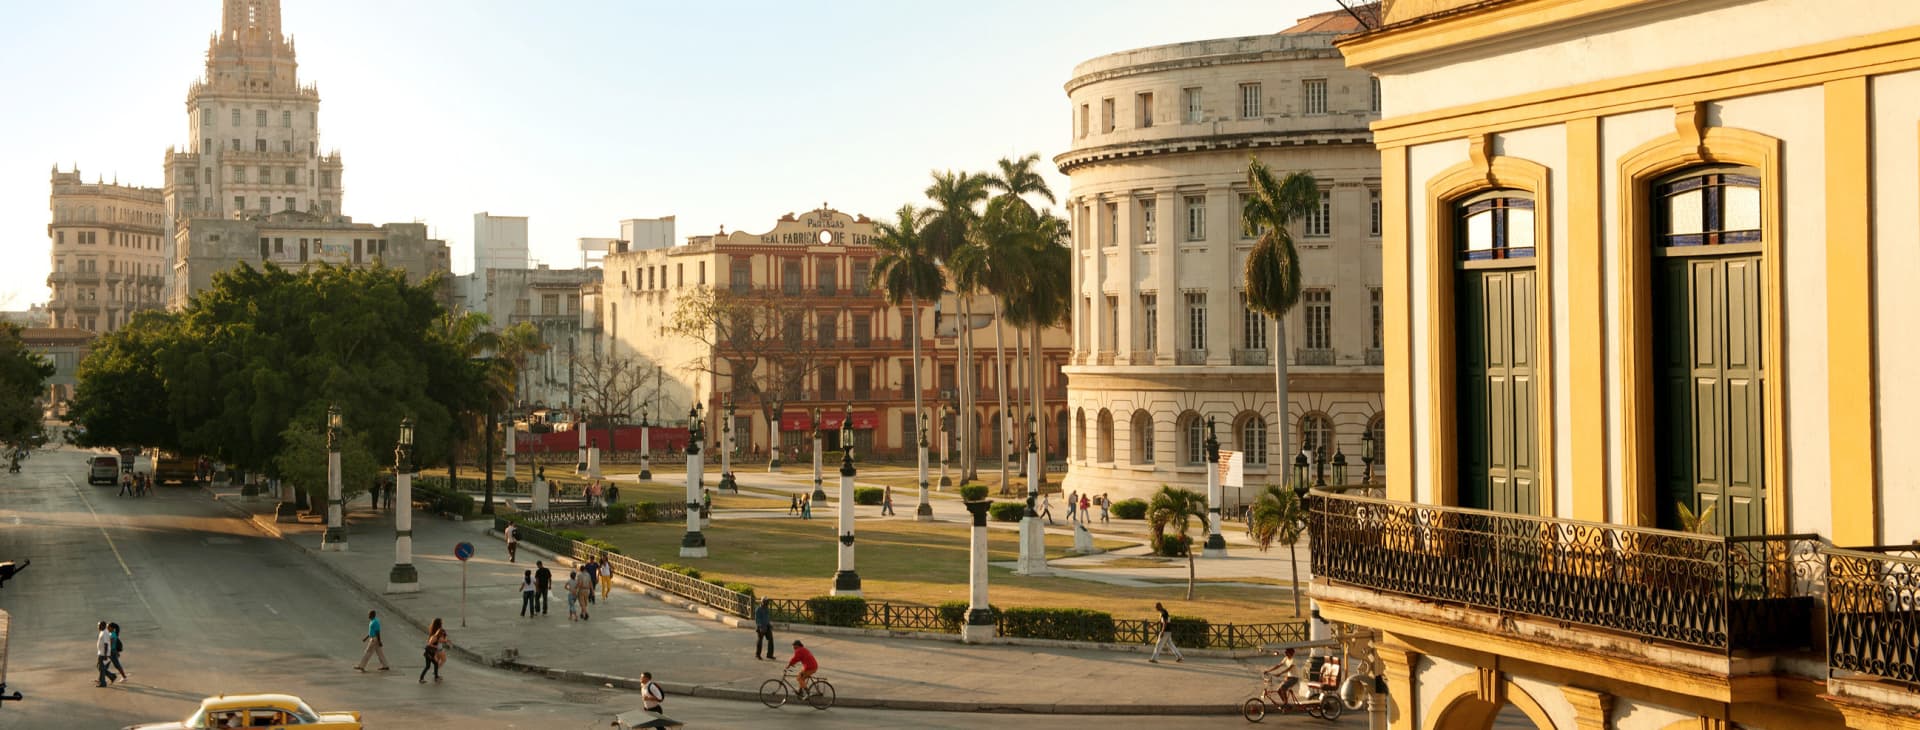 Rejser til Havana (Cuba) - Find ferie her | Spies